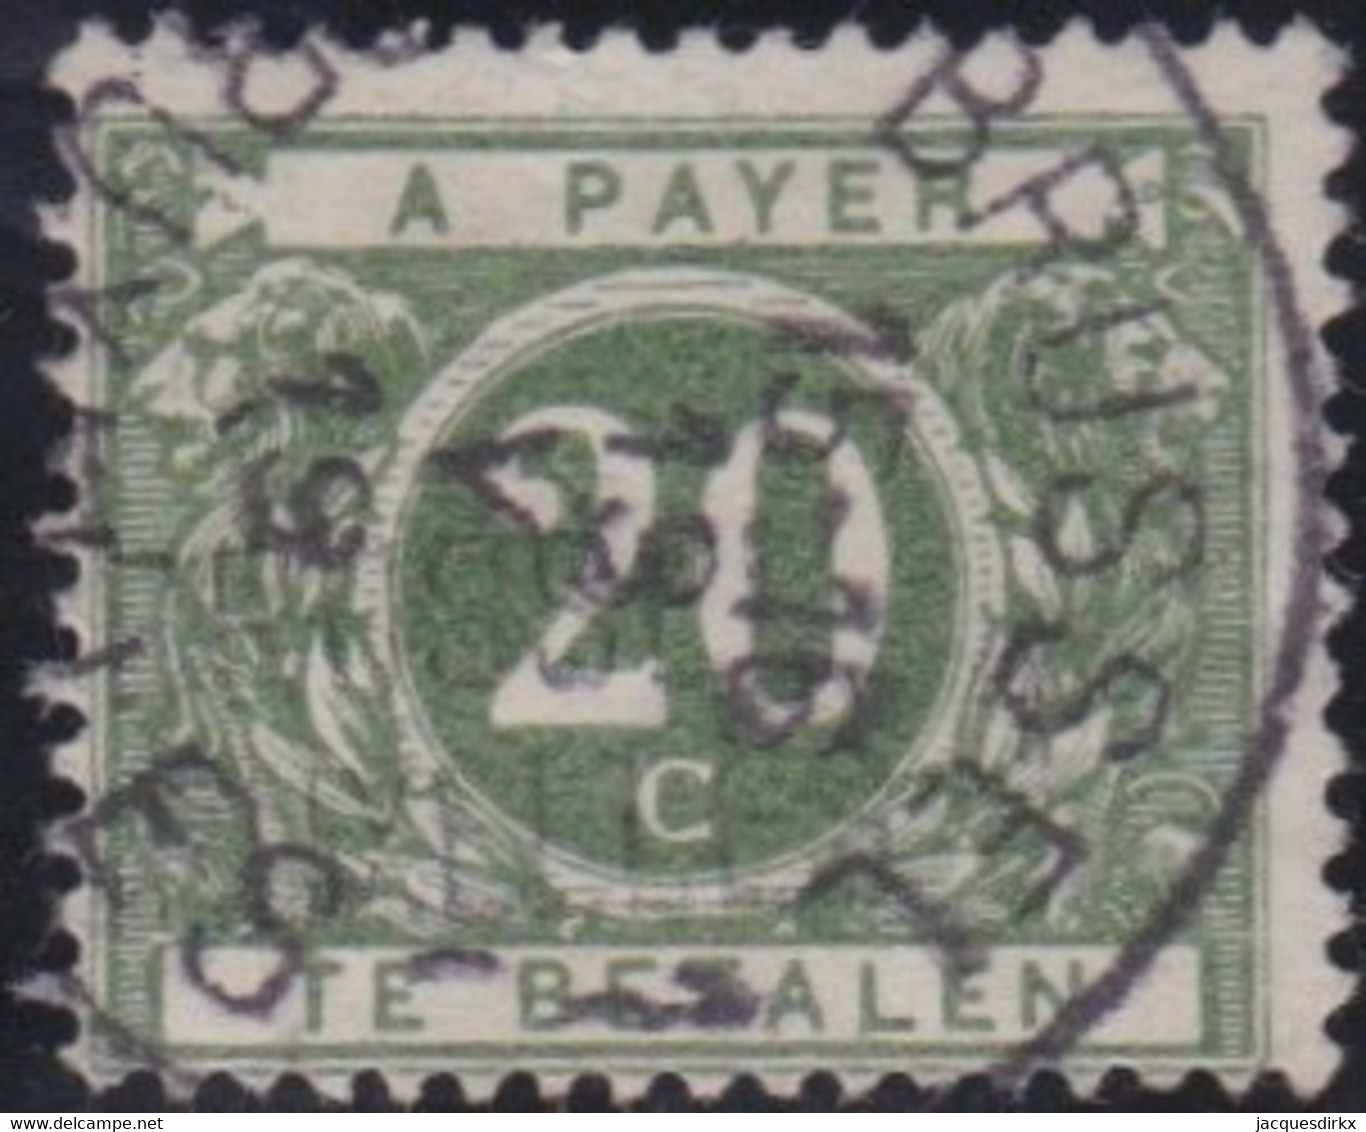 Belgie   .   OBP    .   Taxe  14       .       O    .   Gestempeld   .   /   .  Oblitéré - Postzegels